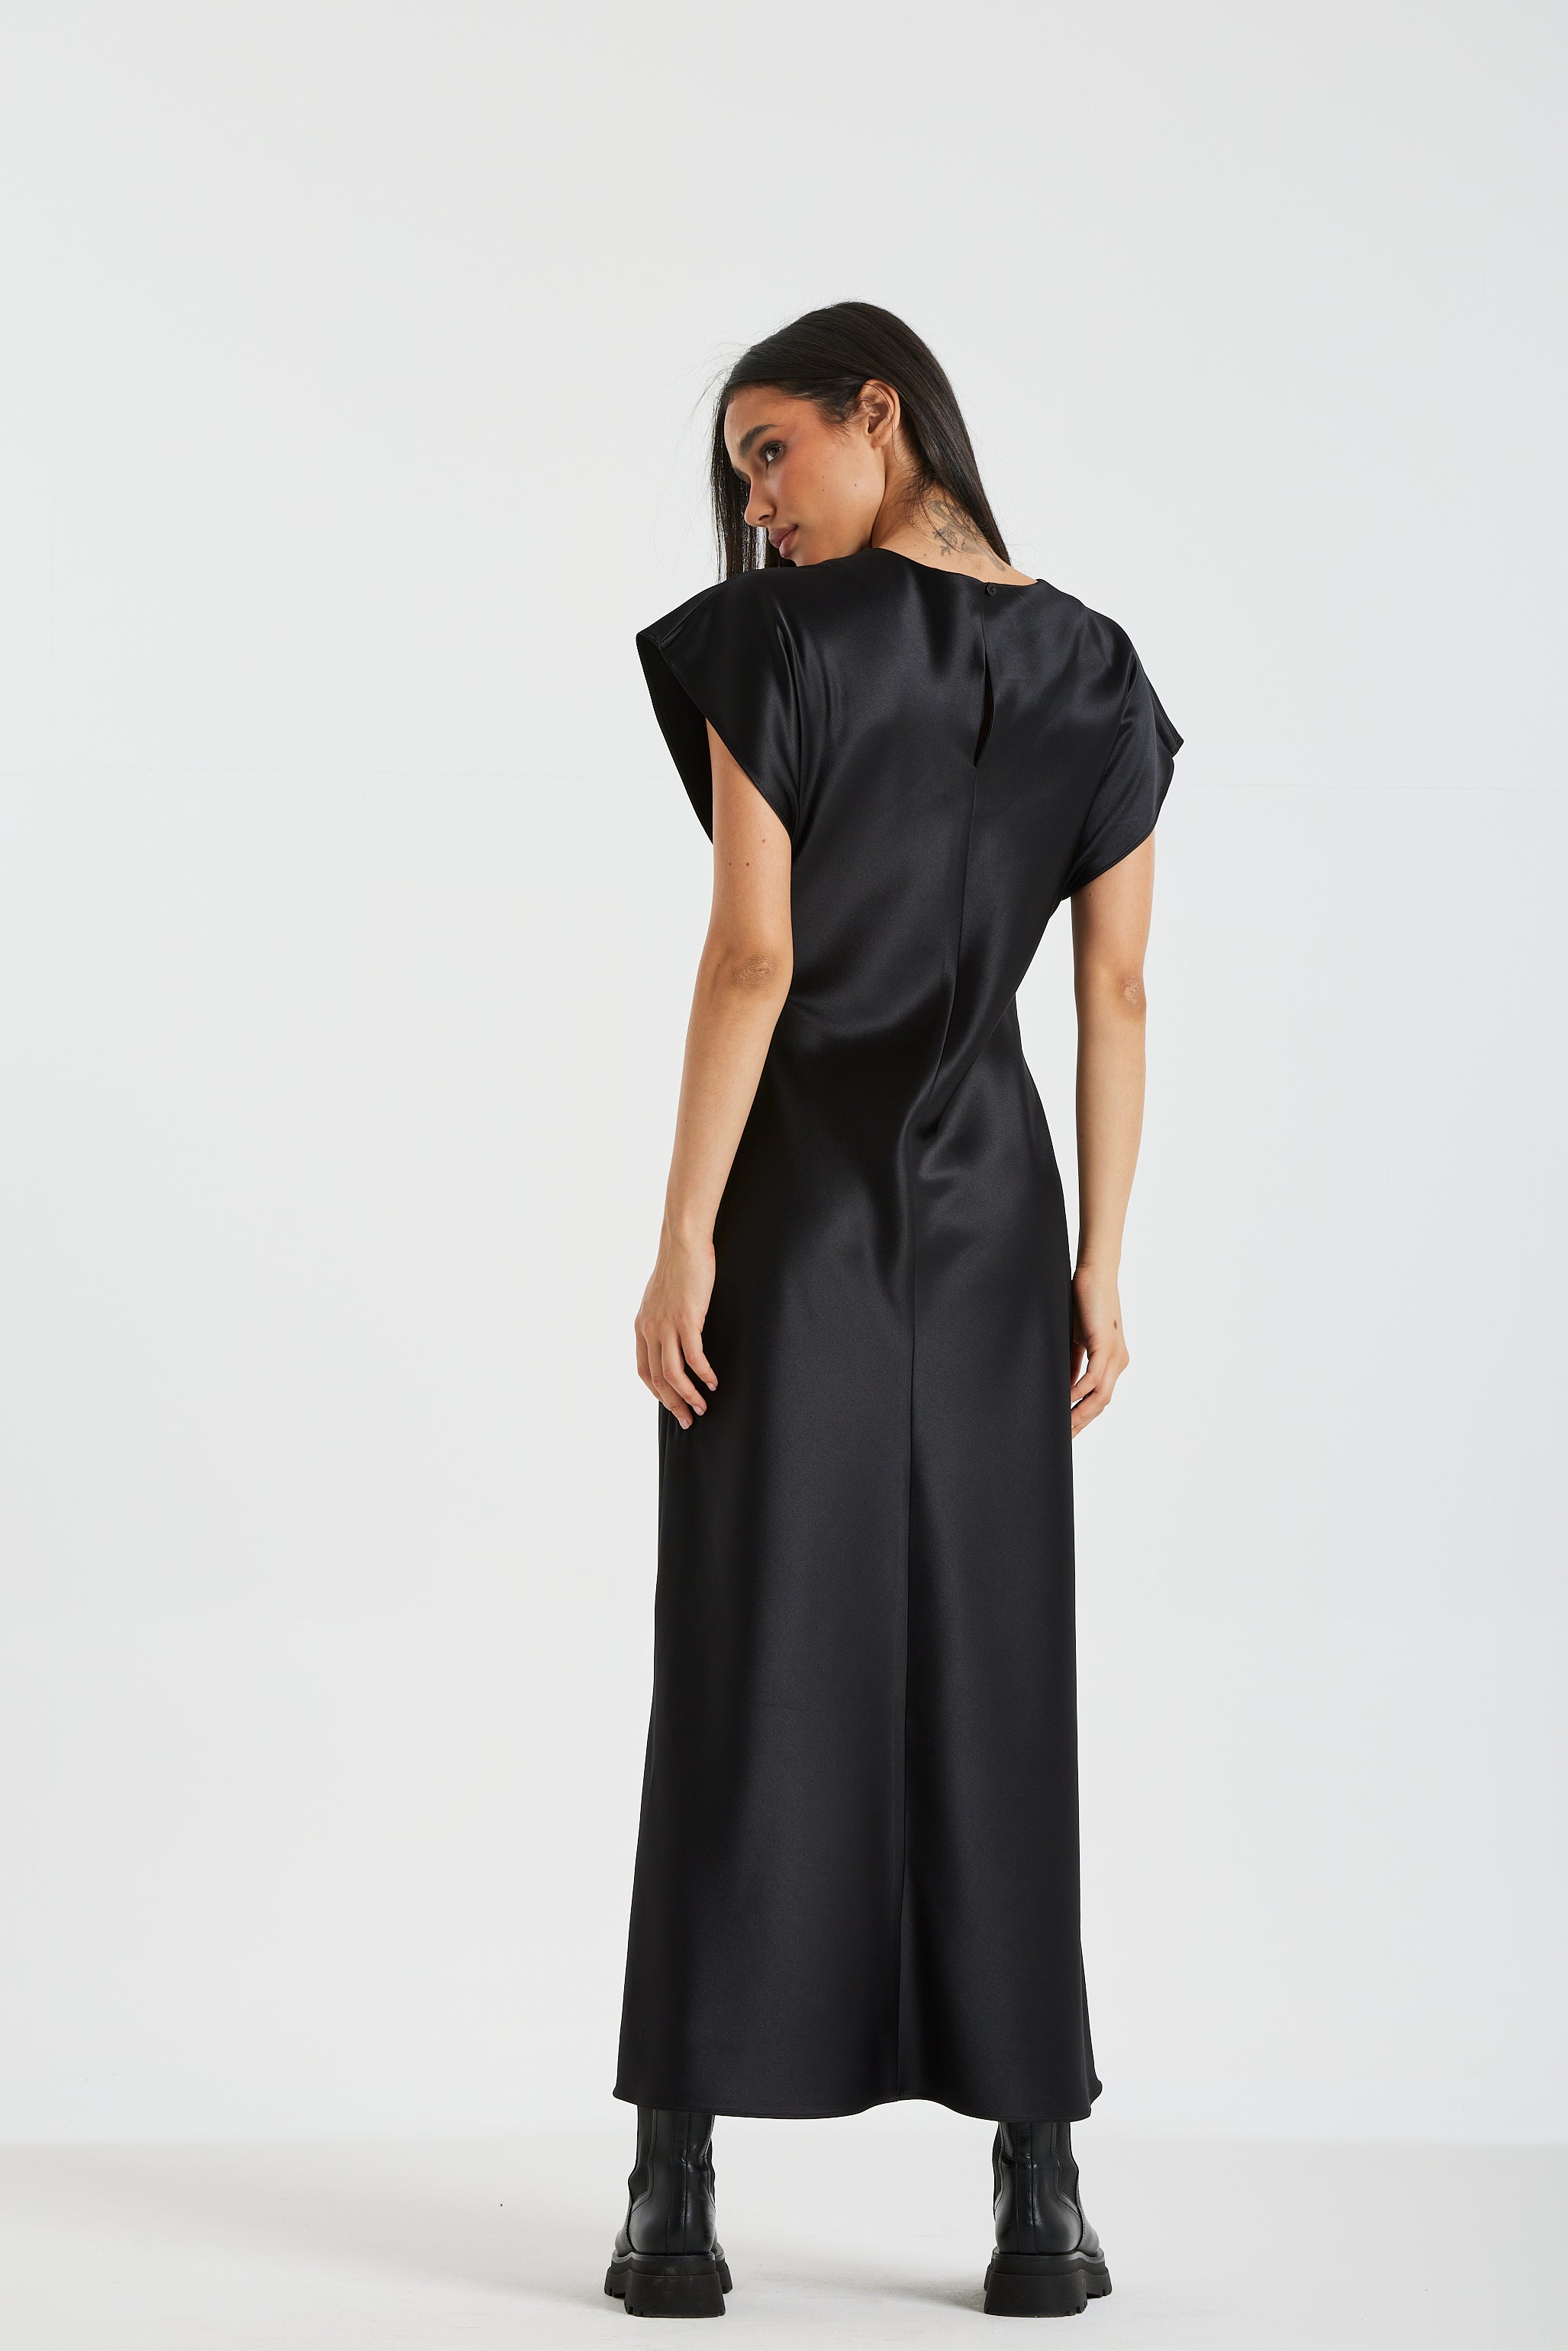 Satin Basic Black Dress